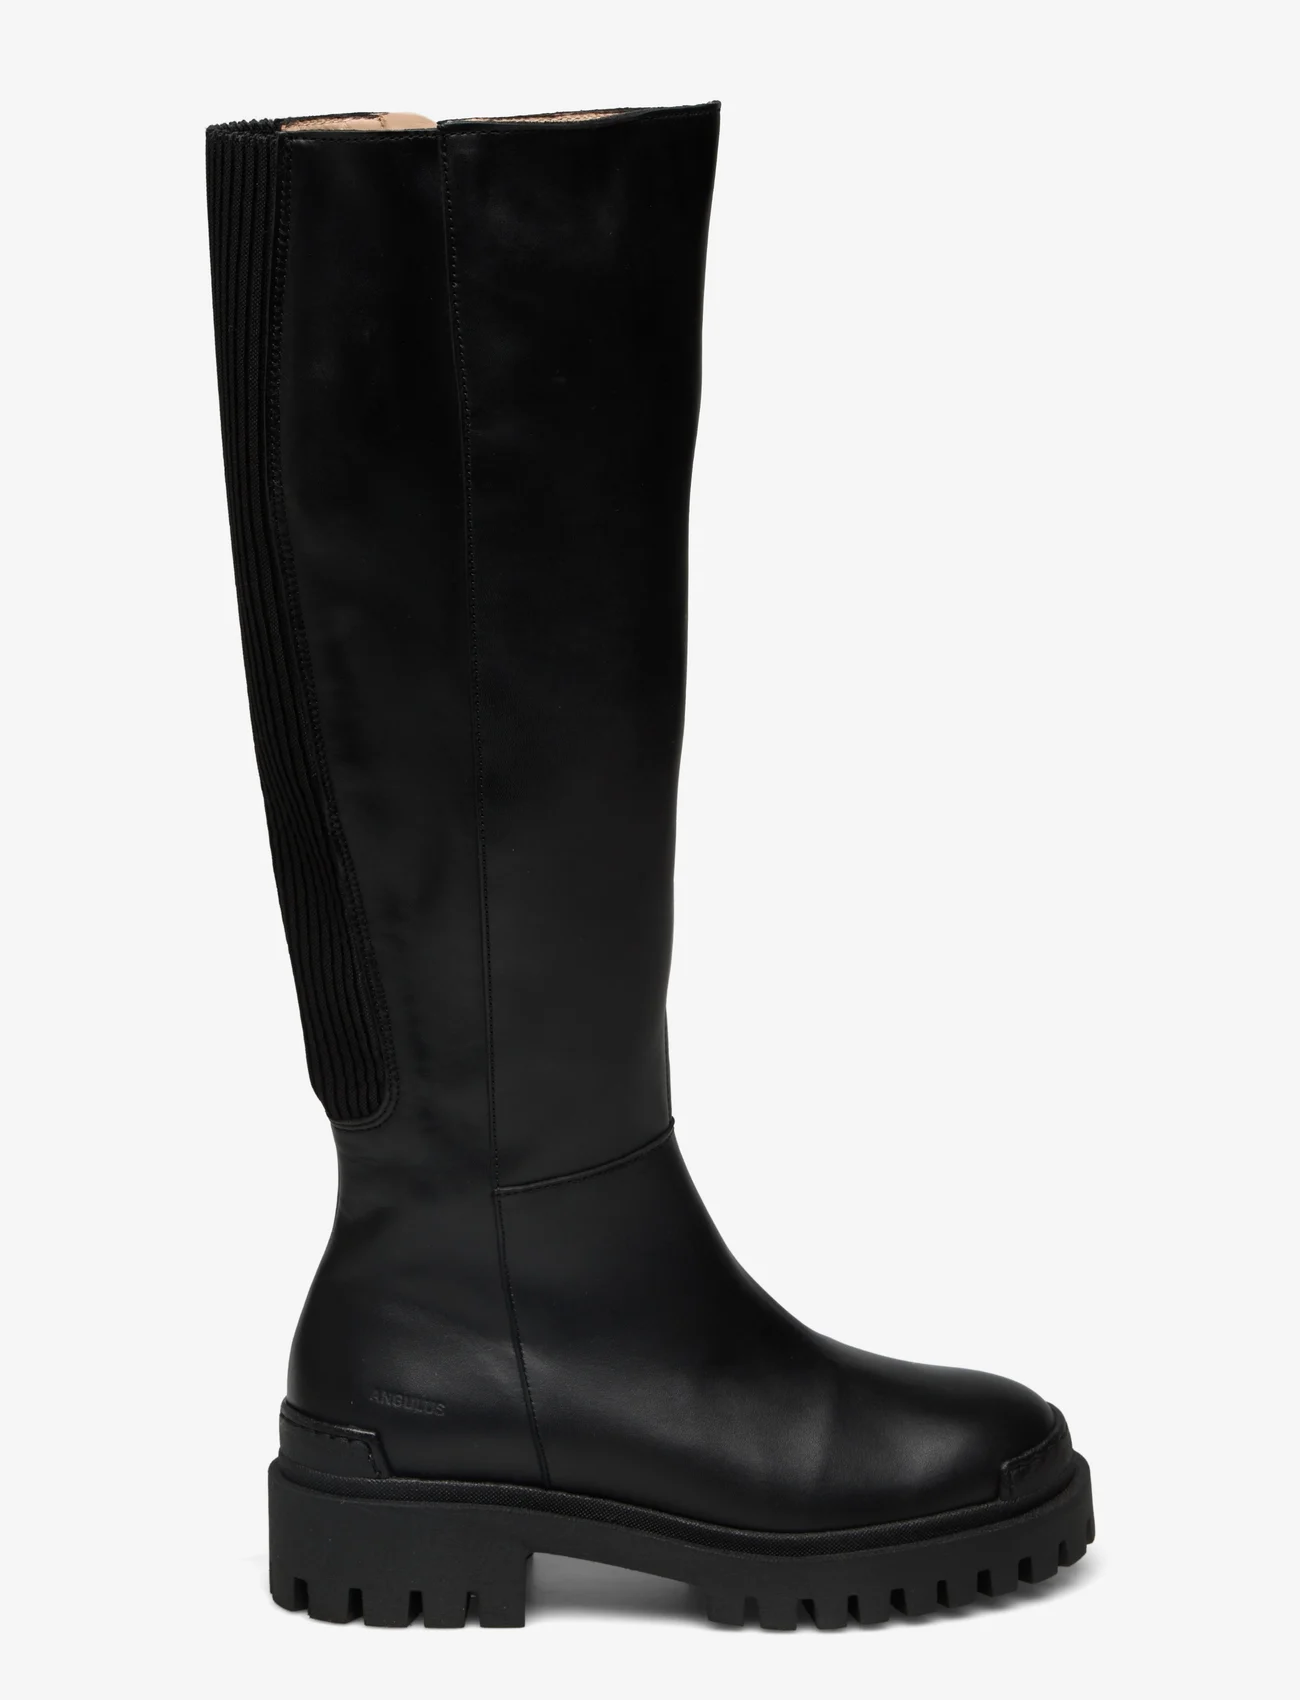 ANGULUS - Boots - flat - höga stövlar - 1604/019 black/black - 1